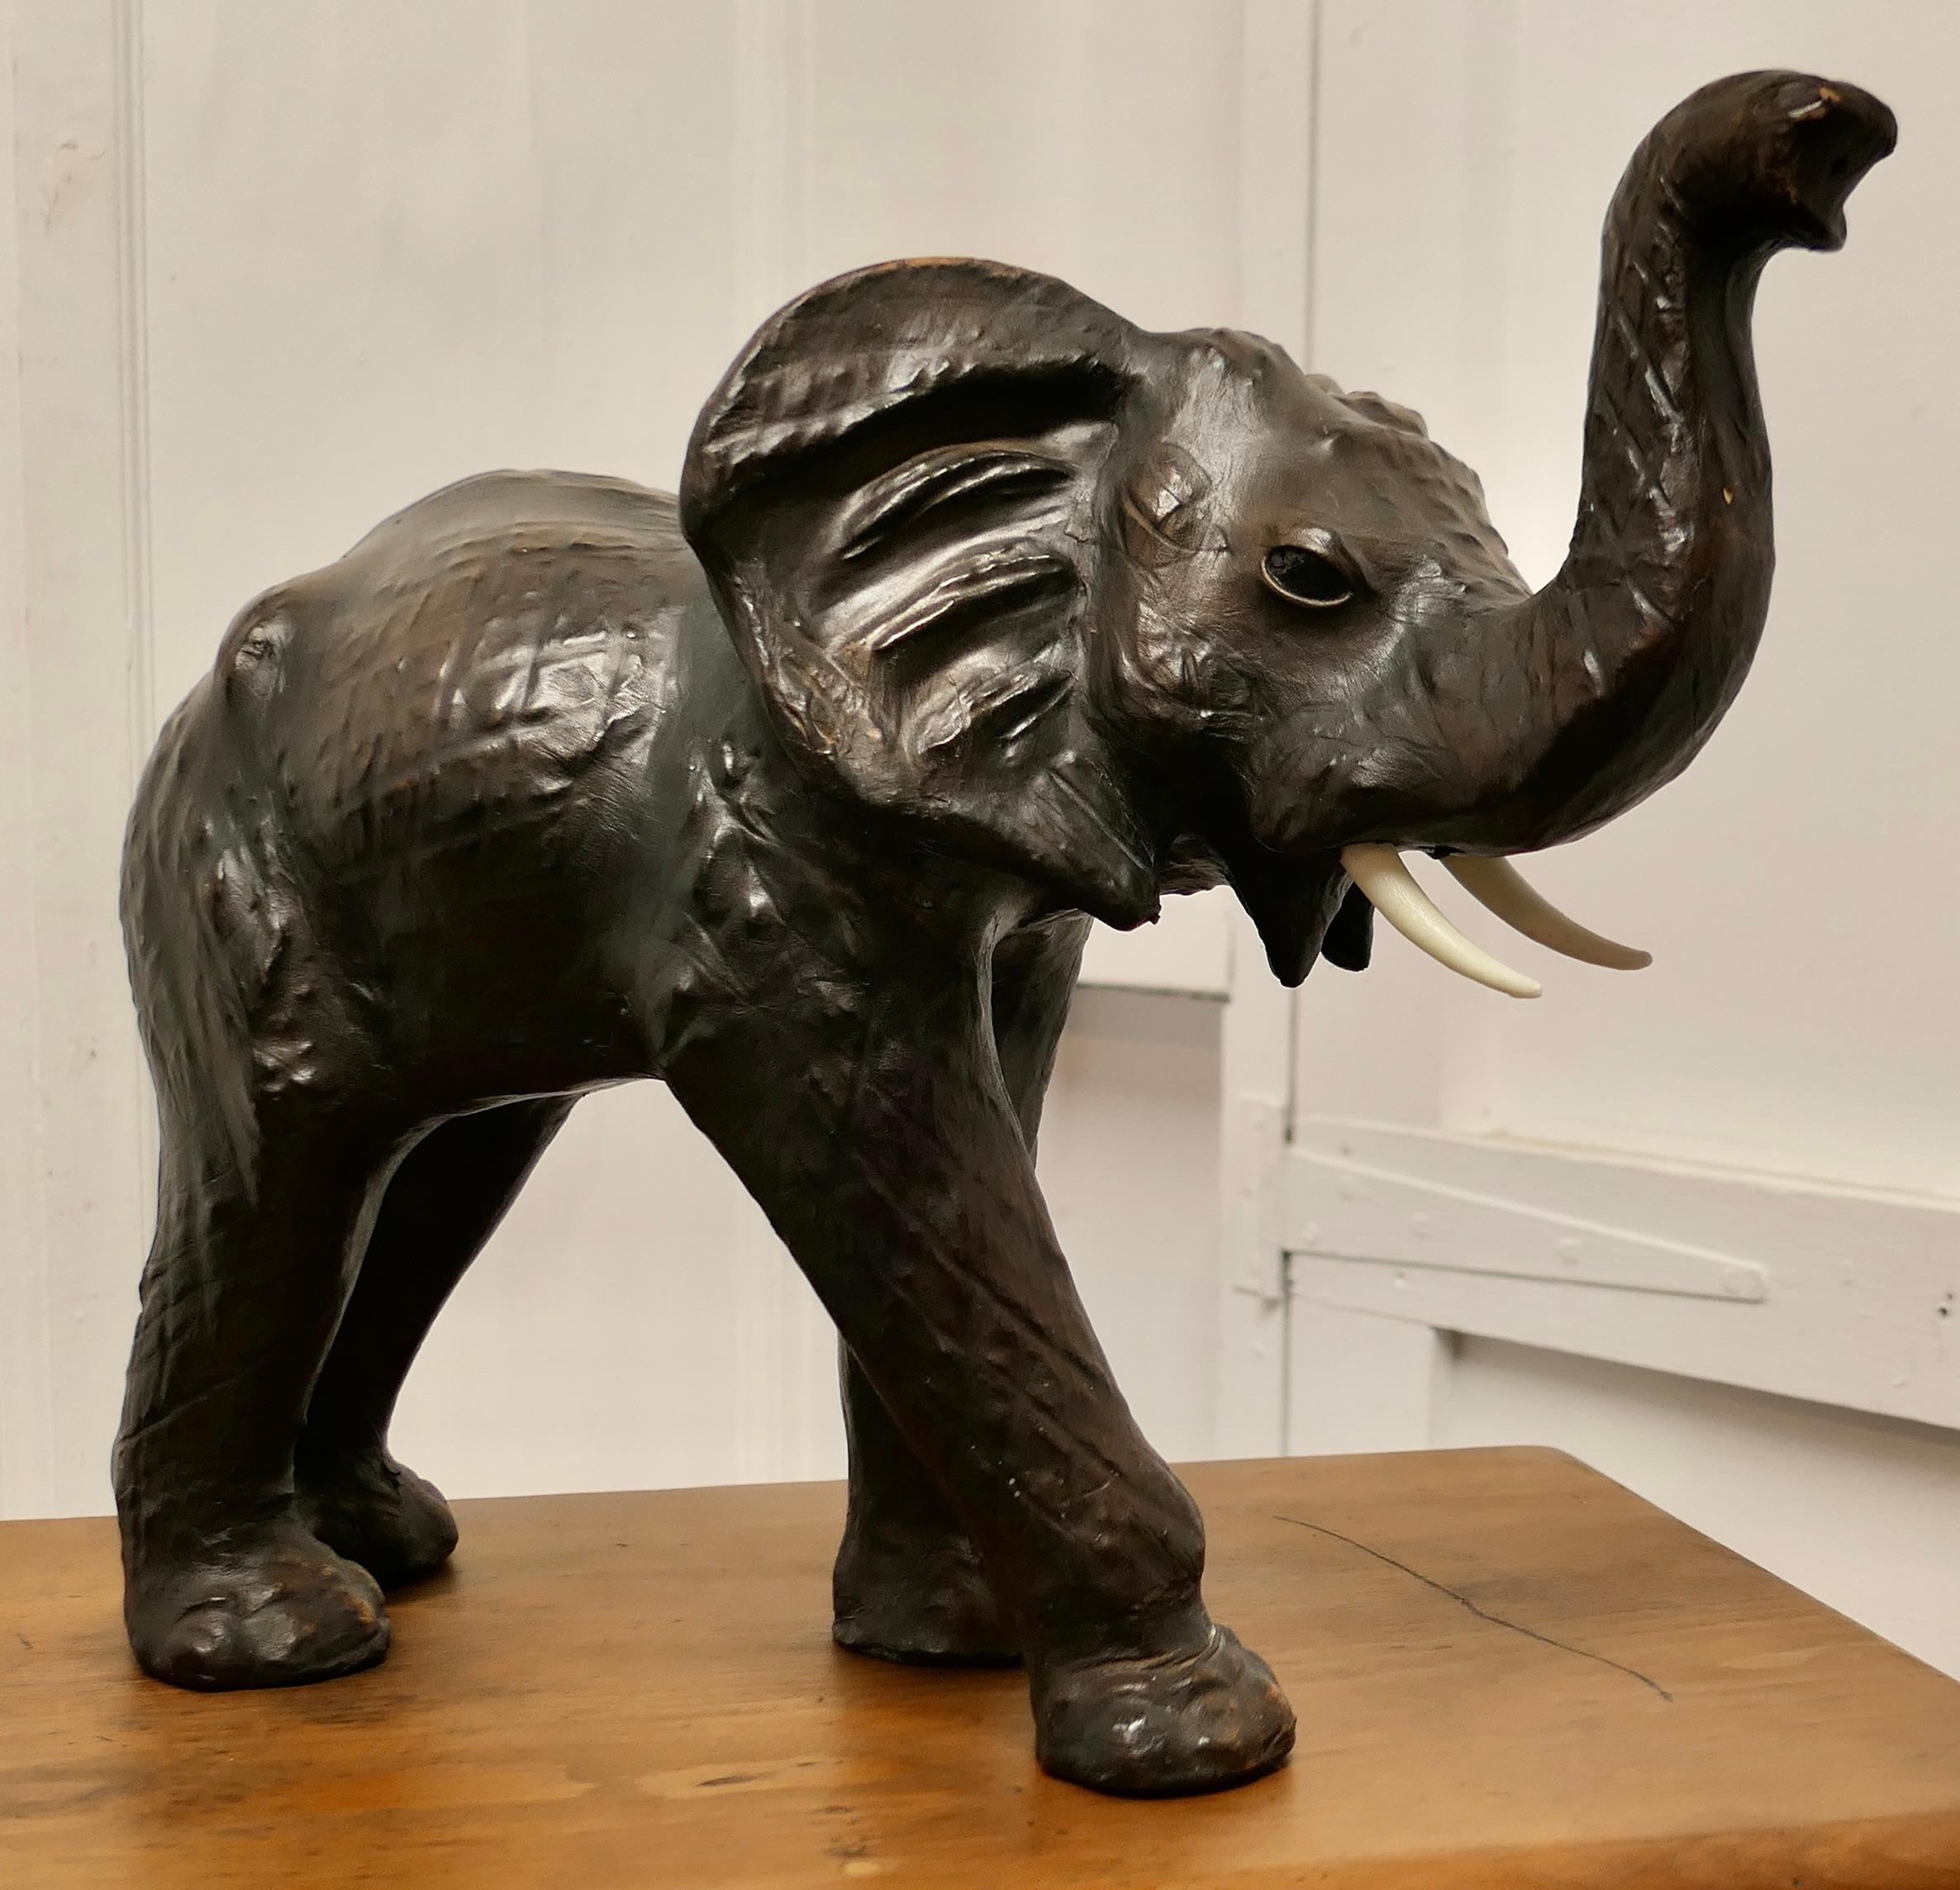  Modèle en cuir d'éléphant Arts and Crafts 

Il s'agit d'une pièce rare et magnifique datant du début du 20e siècle, fabriquée pour Liberty et connue sous le nom de 